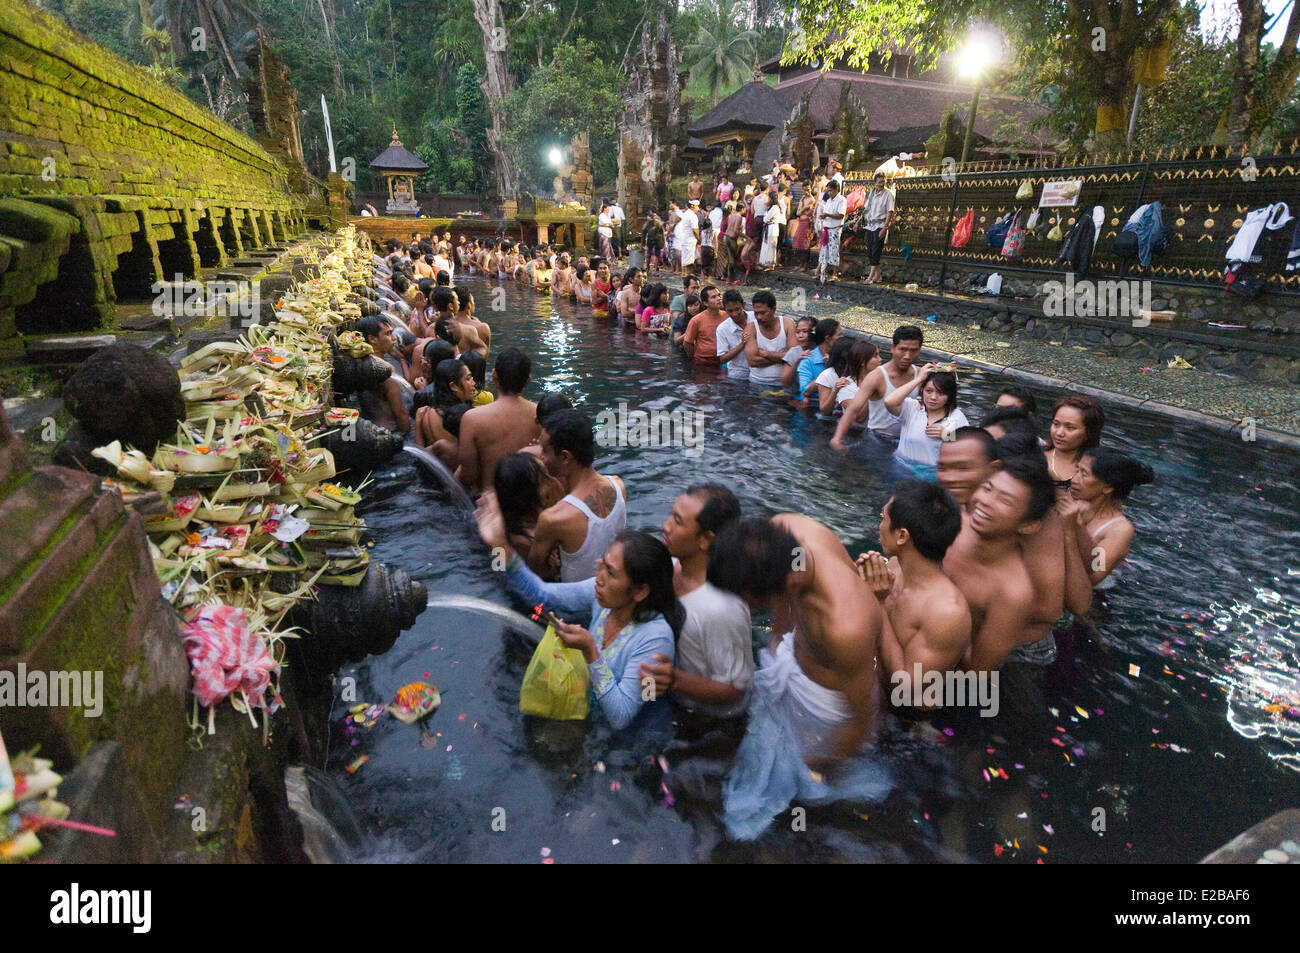 L'INDONÉSIE, Bali, Tampaksiring et temple Tirta Empul bain sacré, de purification de l'eau dans la foule Banque D'Images